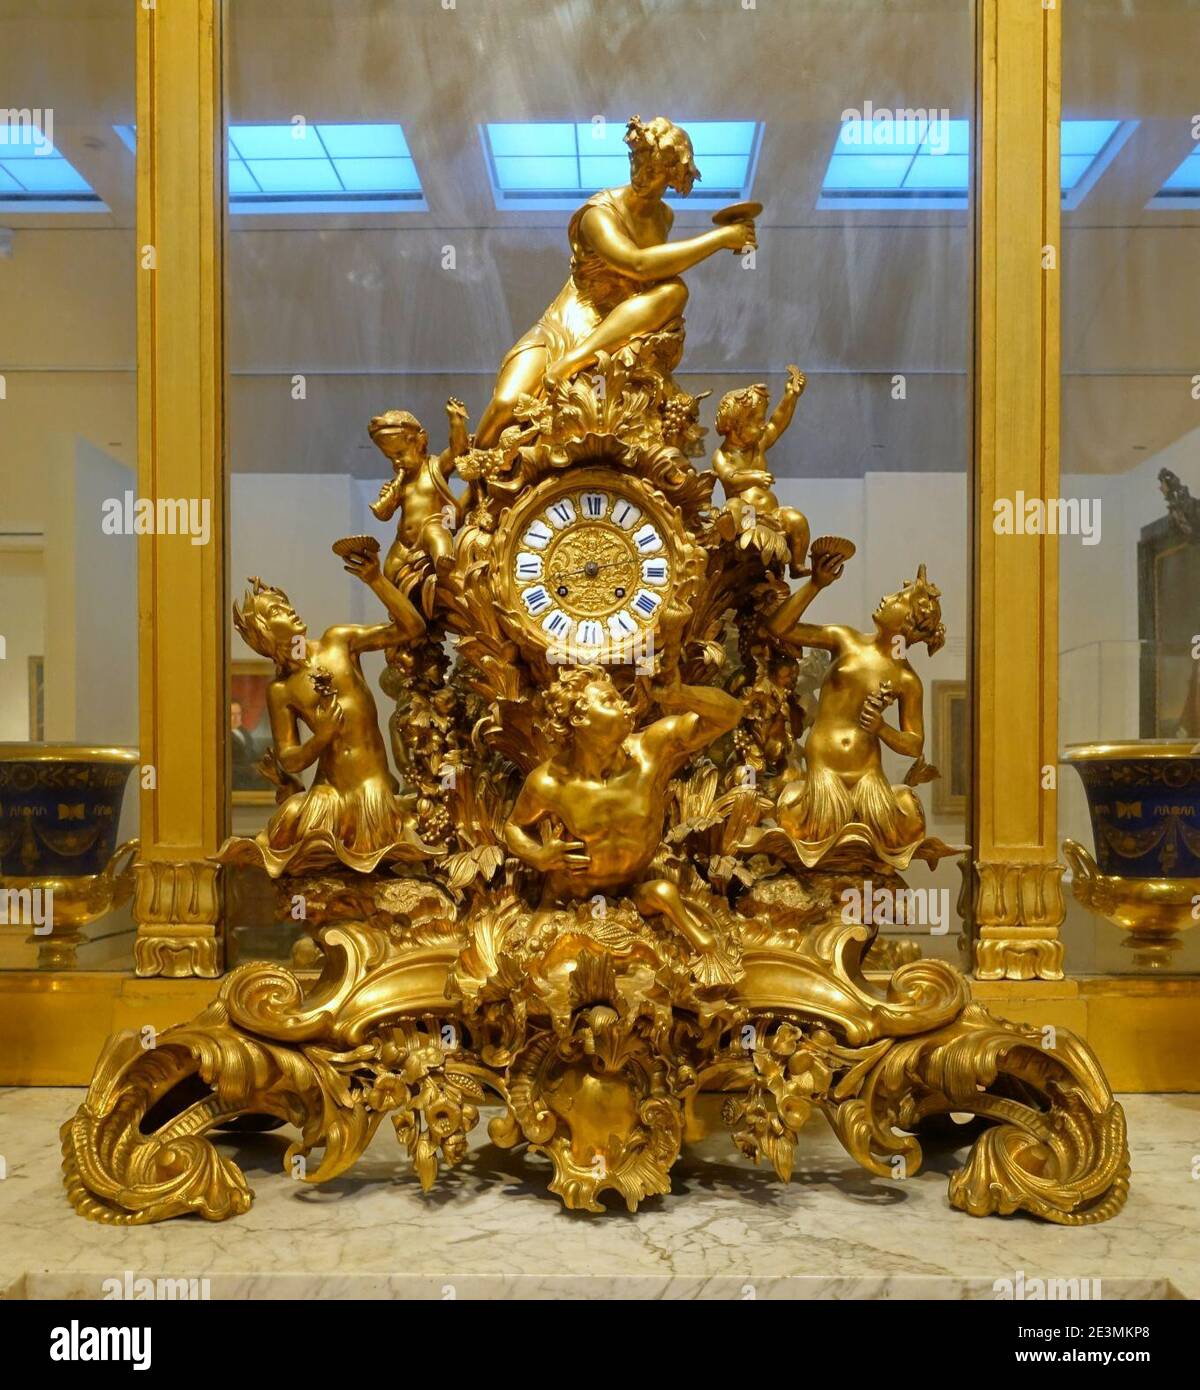 Orologio Mantel di proprietà di George Peabody, da Raulin a Paris, Francia, 1848, bronzo dorato, ottone, vetro Foto Stock